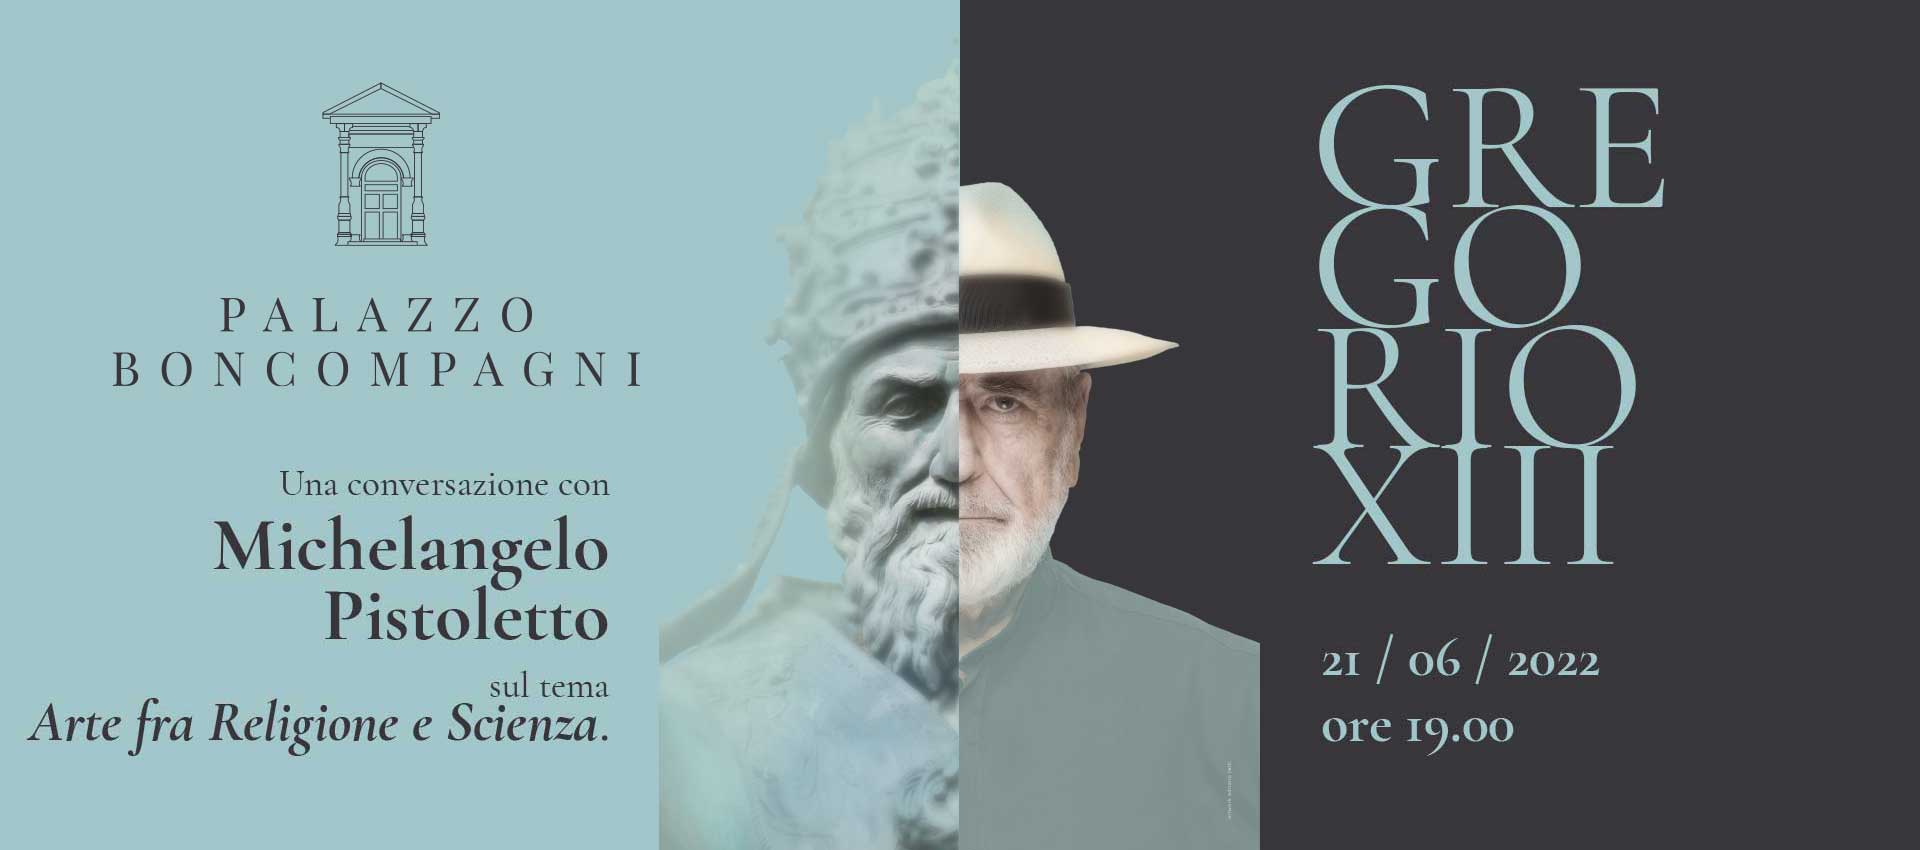 <p>21 giugno 2022</p>
<h2>Michelangelo Pistoletto<br />
per i 450 anni<br />
di Papa Gregorio XIII</h2>
